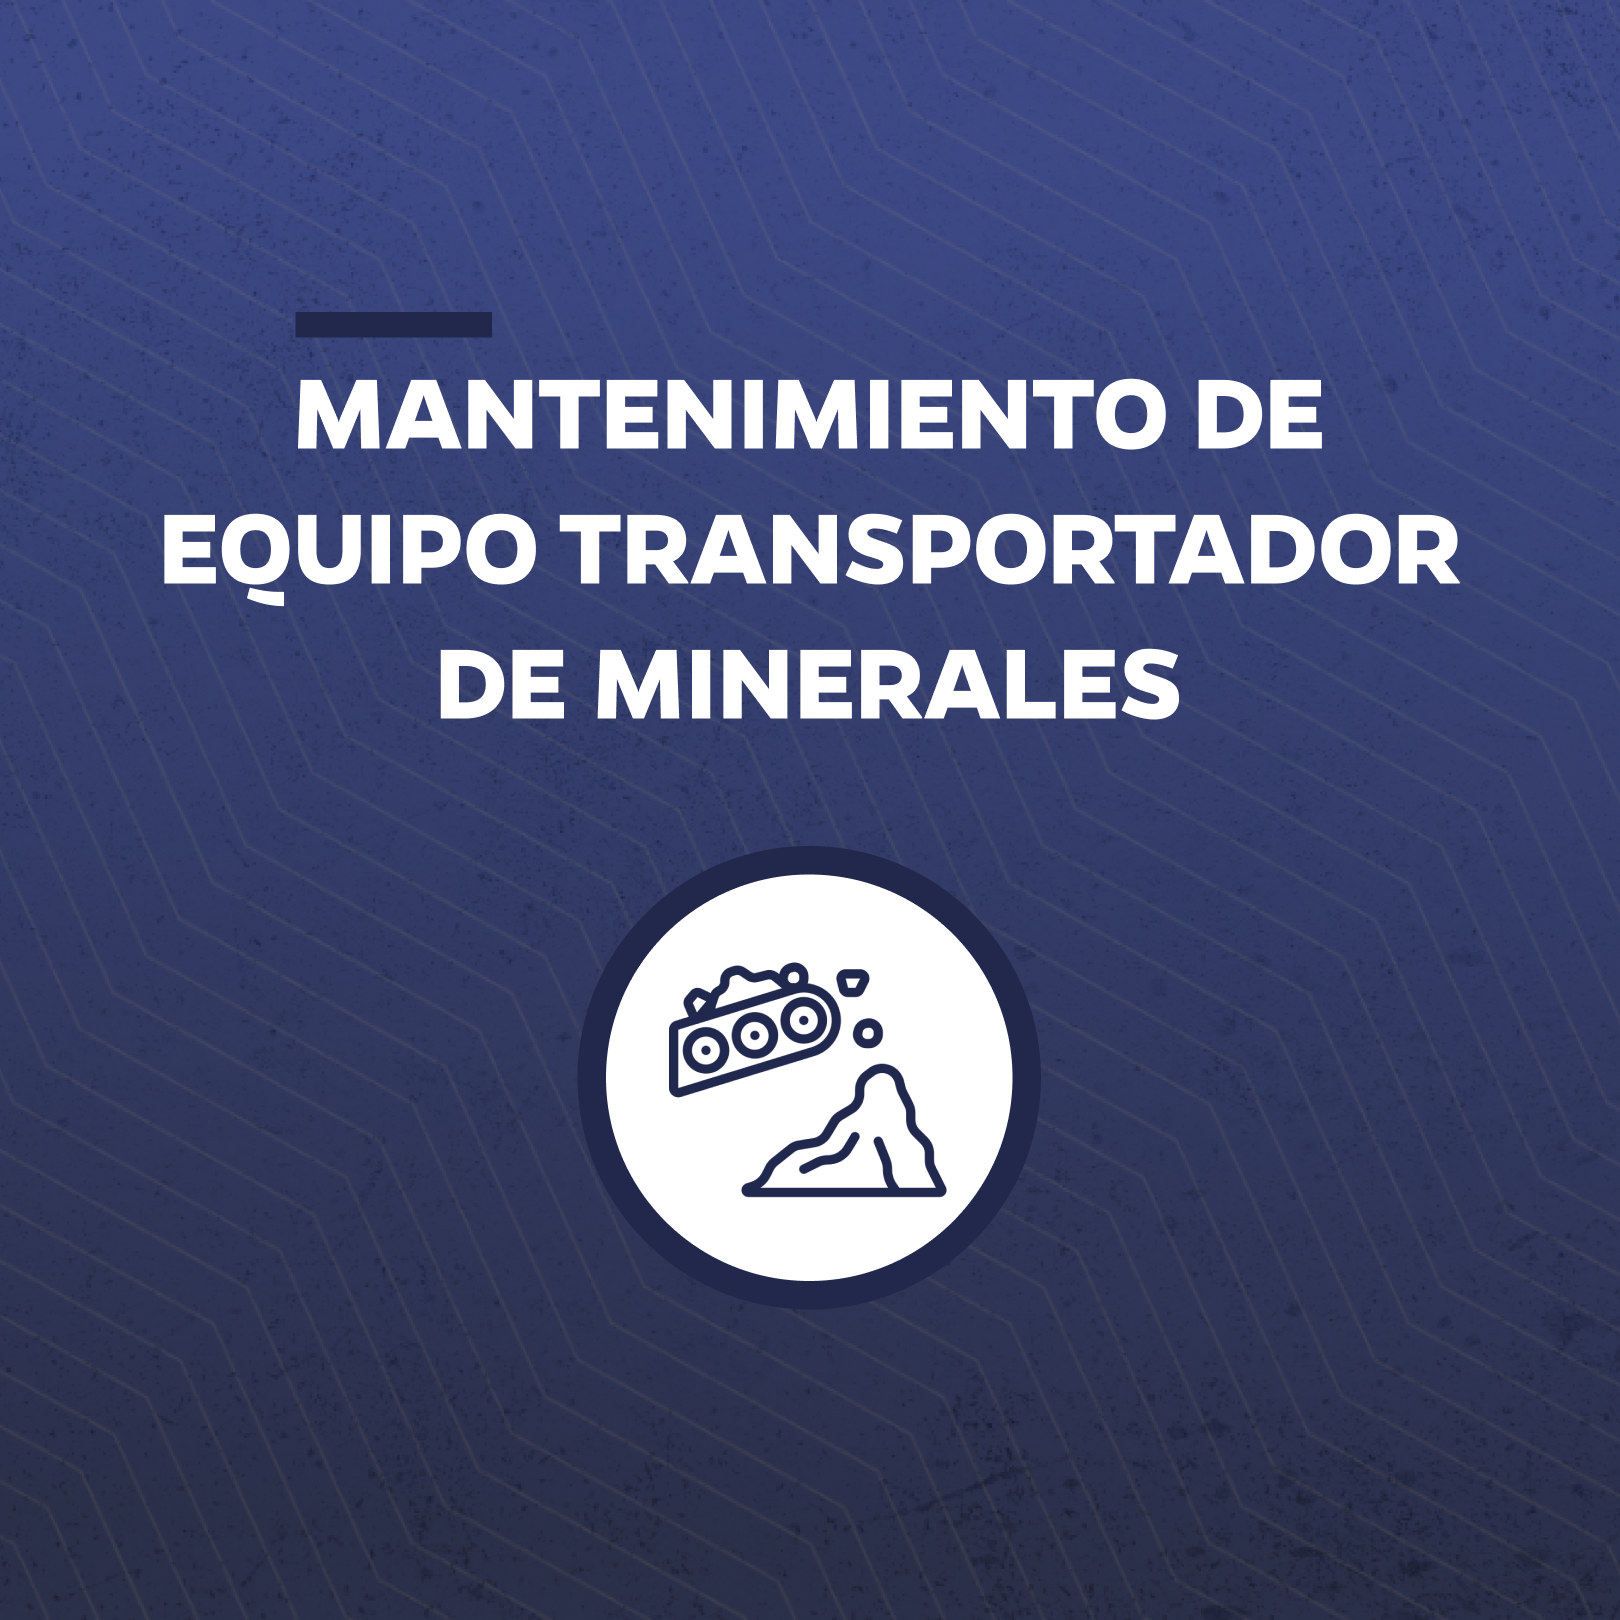 Mantenimiento de Equipo Transportador de Minerales